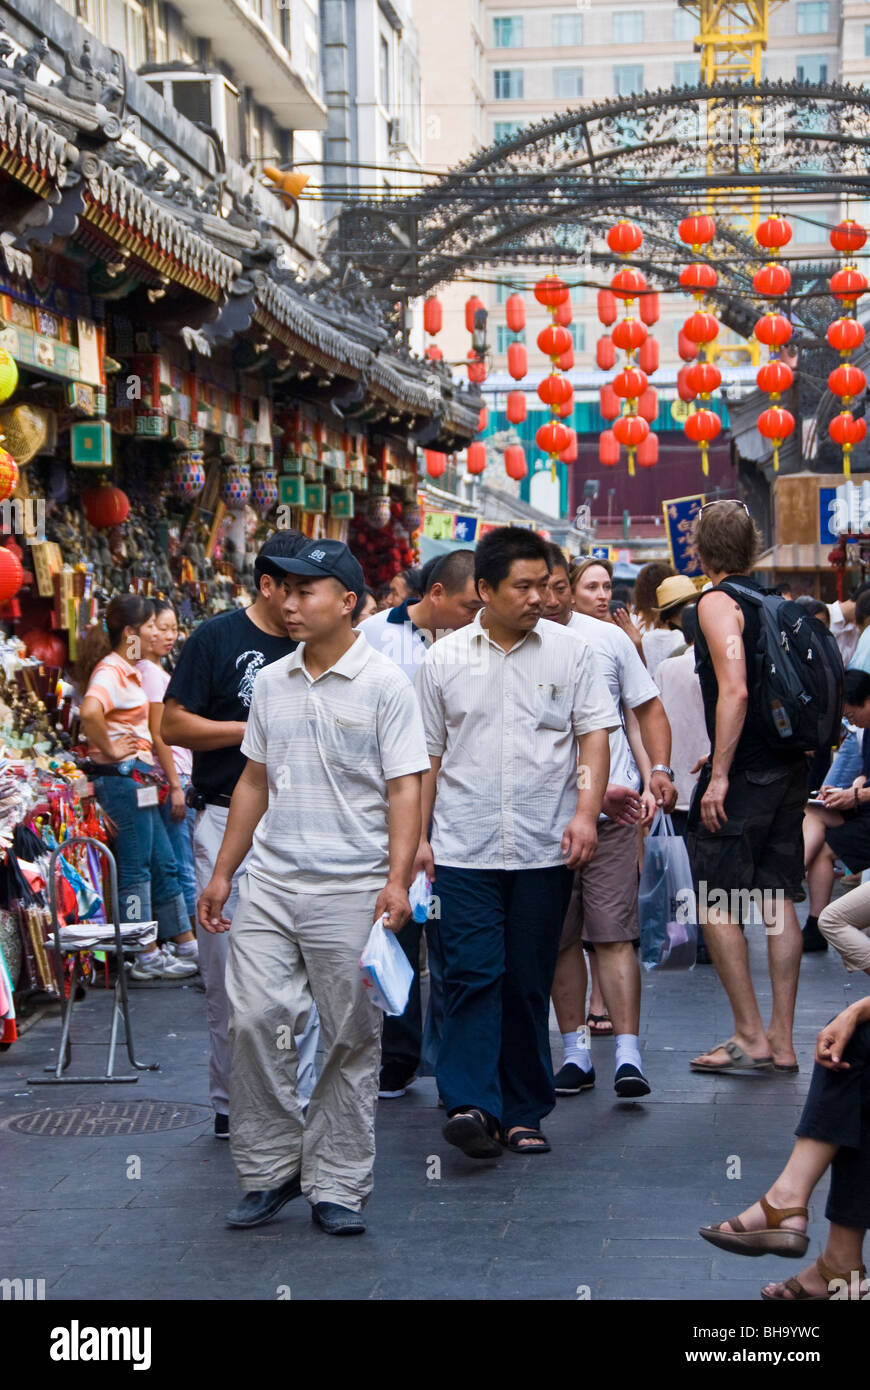 Peking, China - große Menschenmenge zu Fuß, Shopping auf der Handelsstraße in der Nähe der 'Wang Fu Jing' Avenue, chinesische Stadtstraße, geschäftige Straßen PEKING Markt, Einkaufsviertel Stockfoto